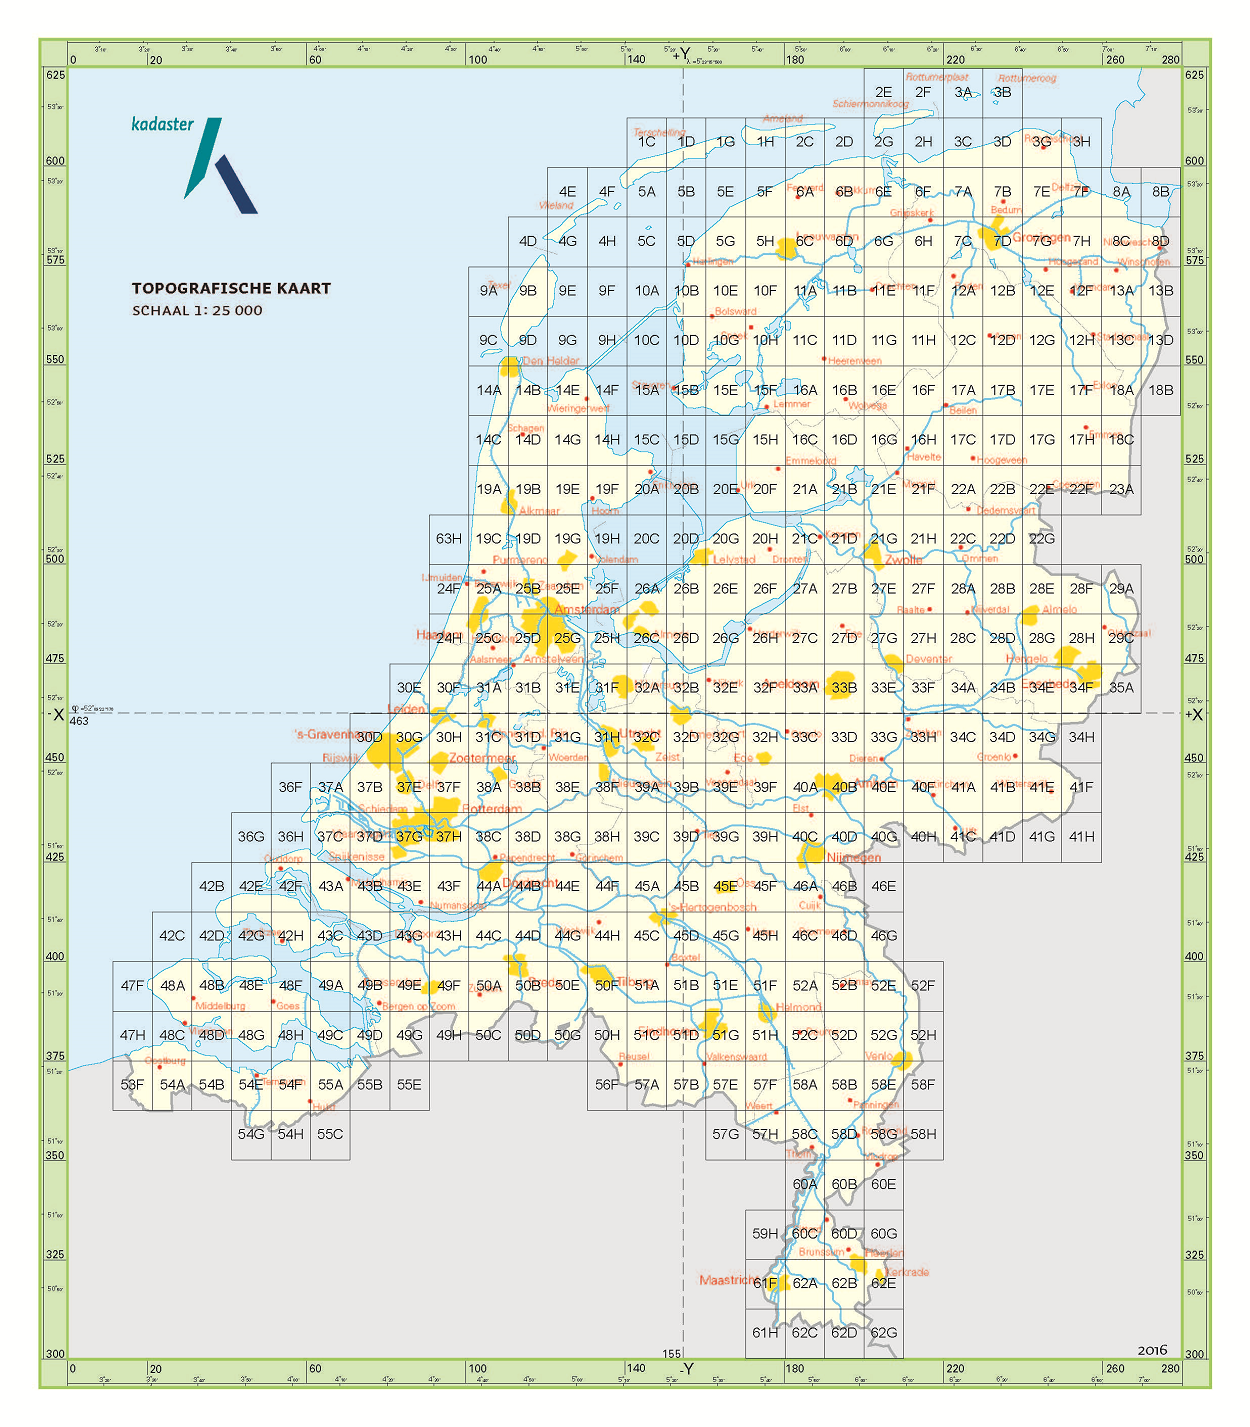 Topografische kaarten Limburg 1:25.000